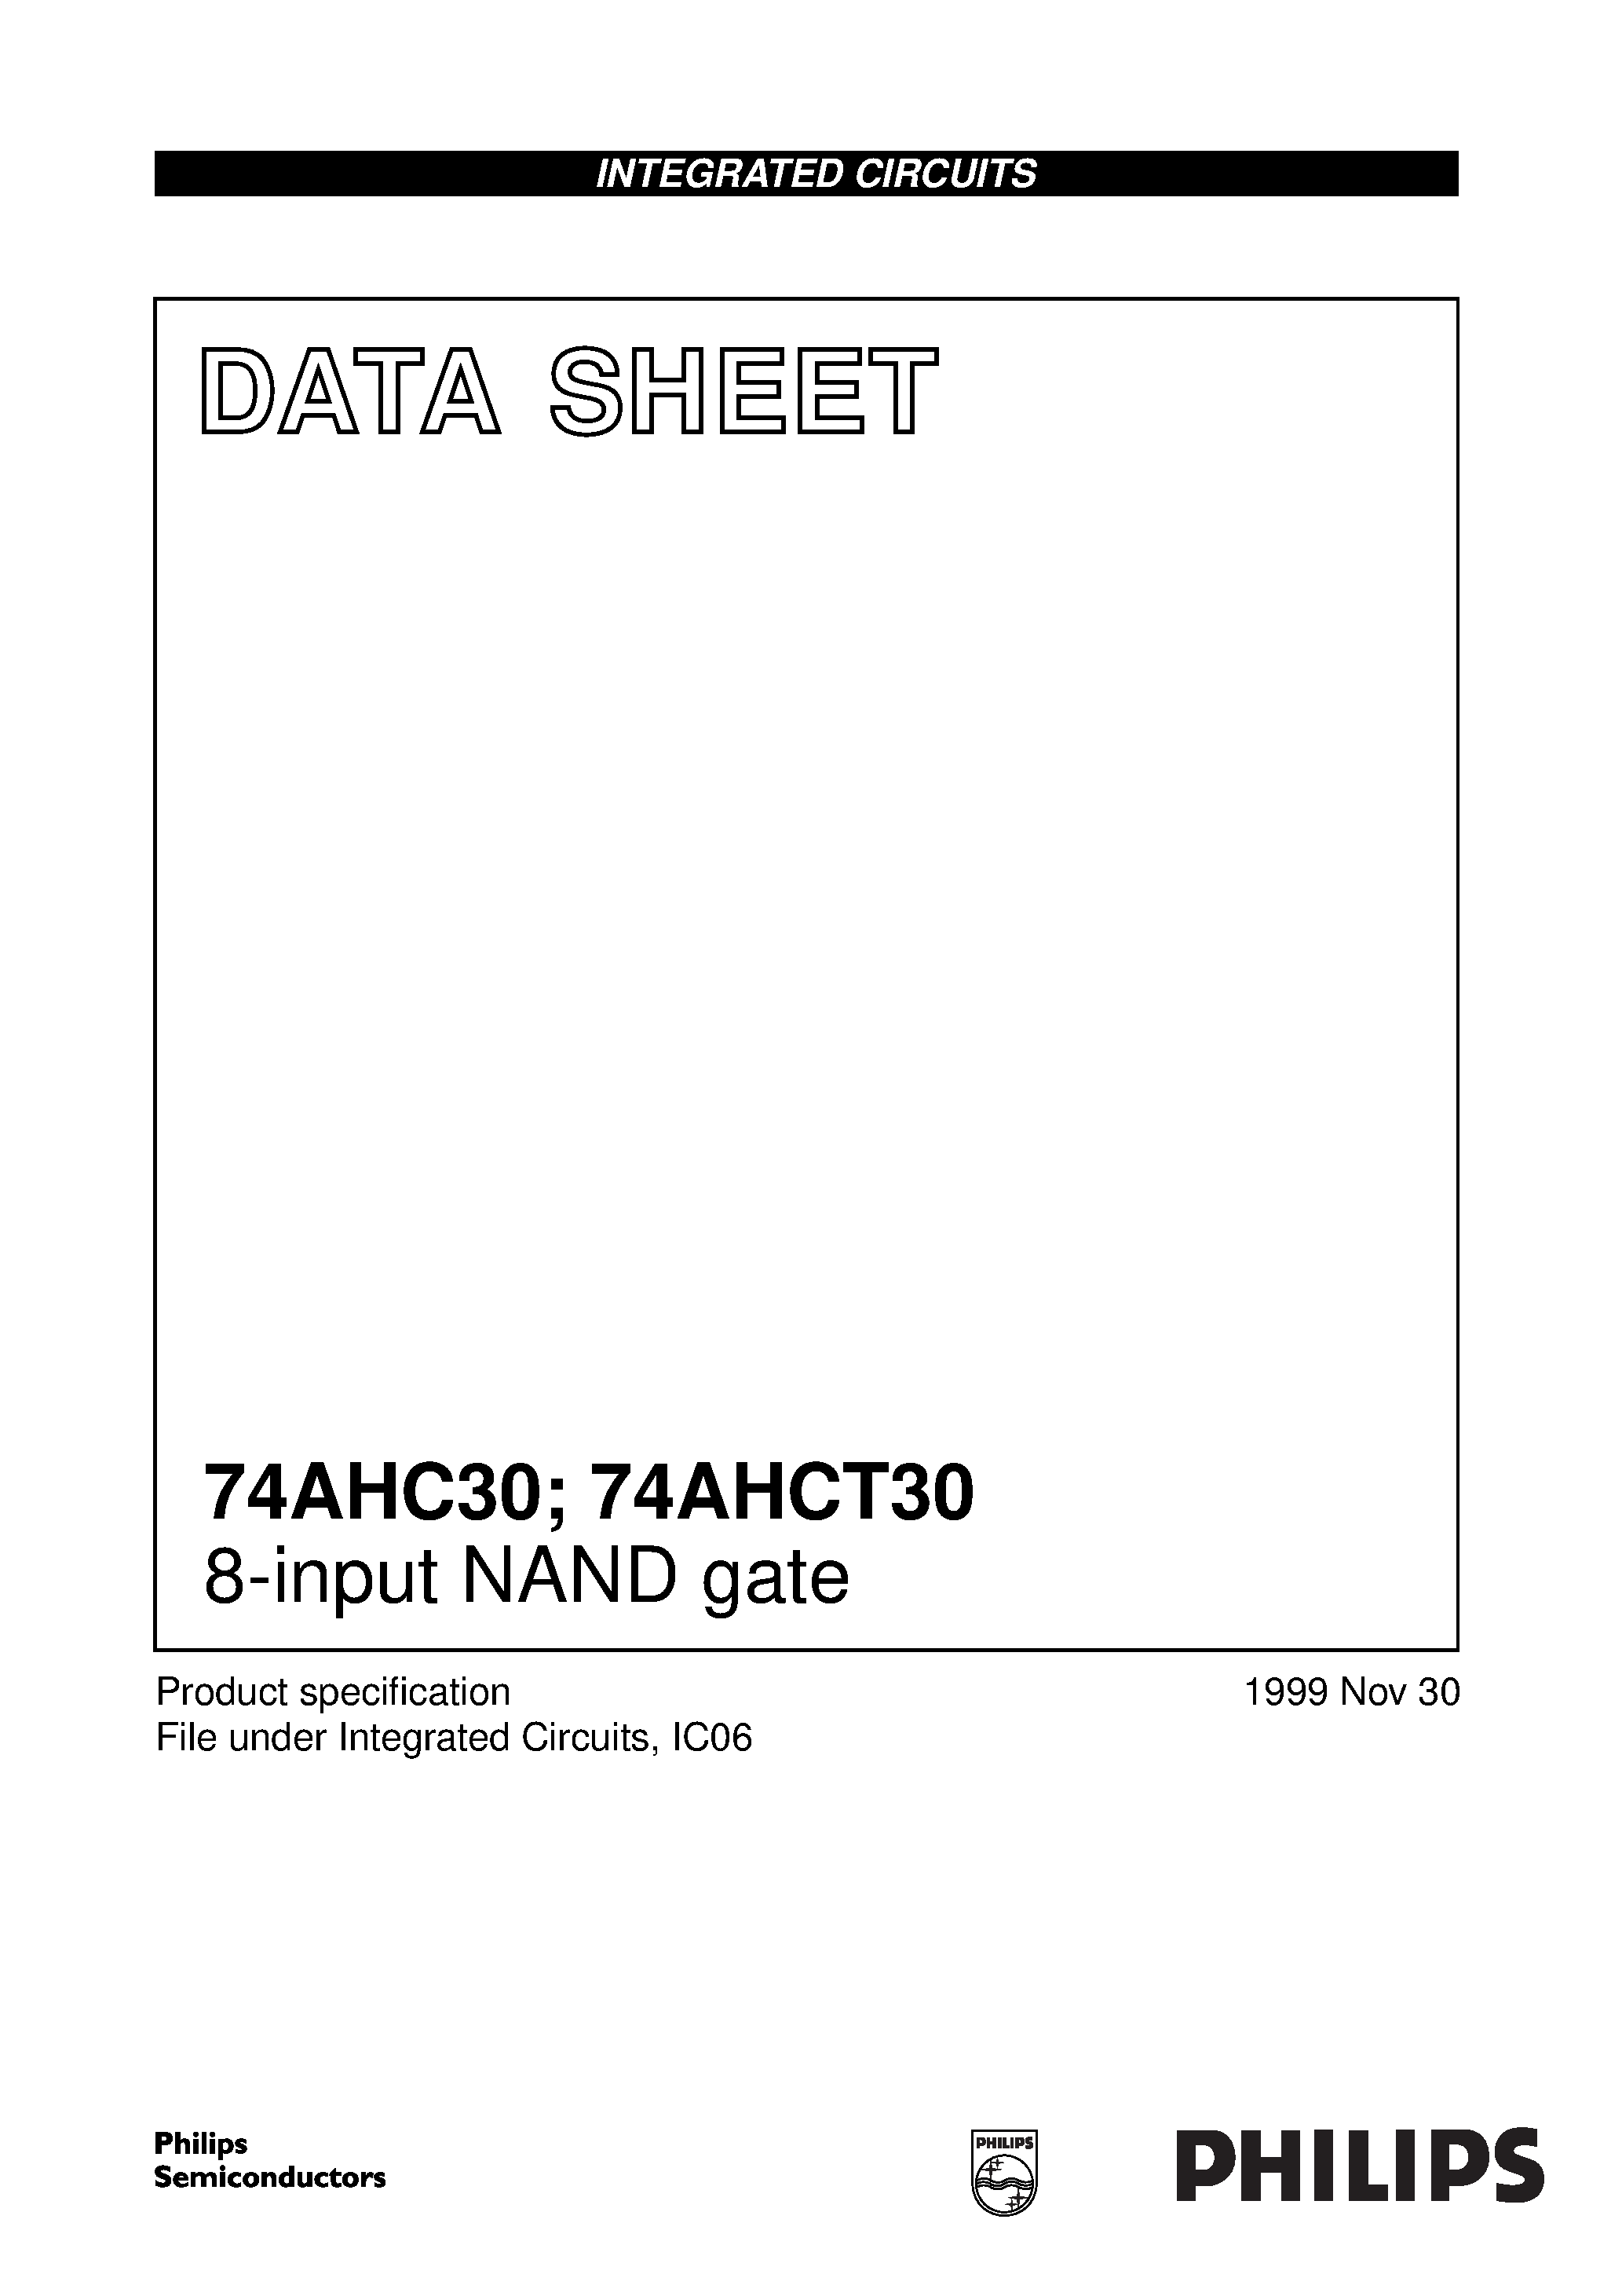 Даташит 74AHCT30 - 8-input NAND gate страница 1